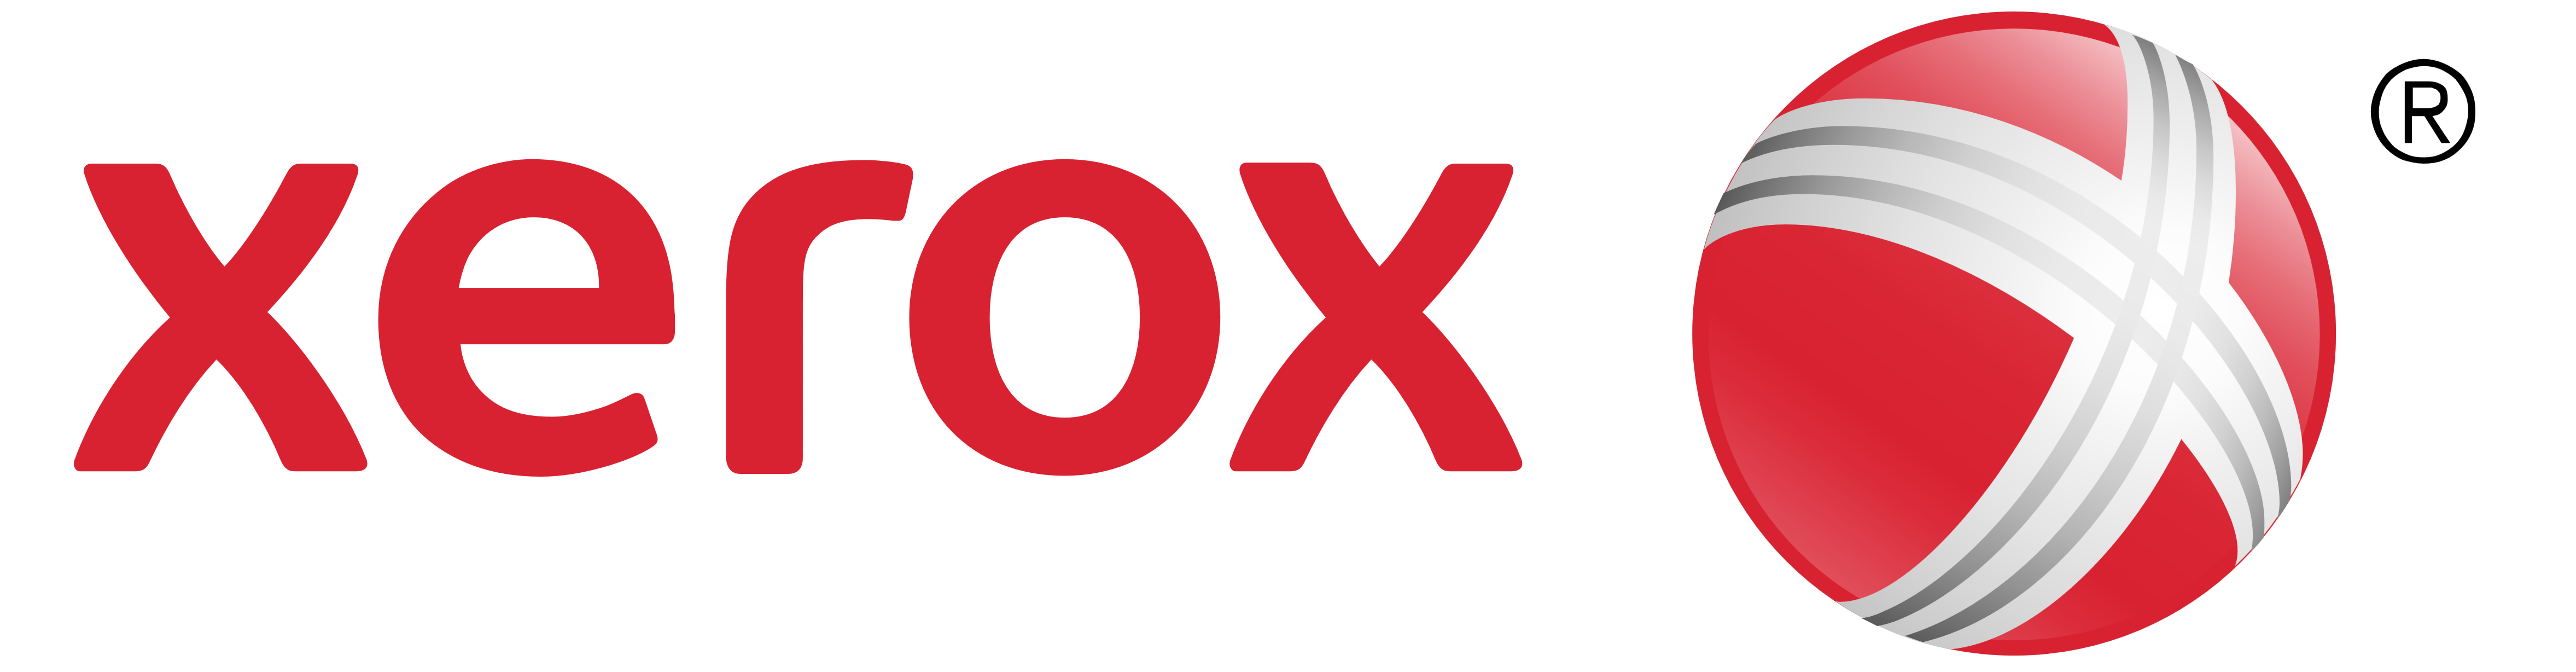 Xerox Logo PNG - 30316